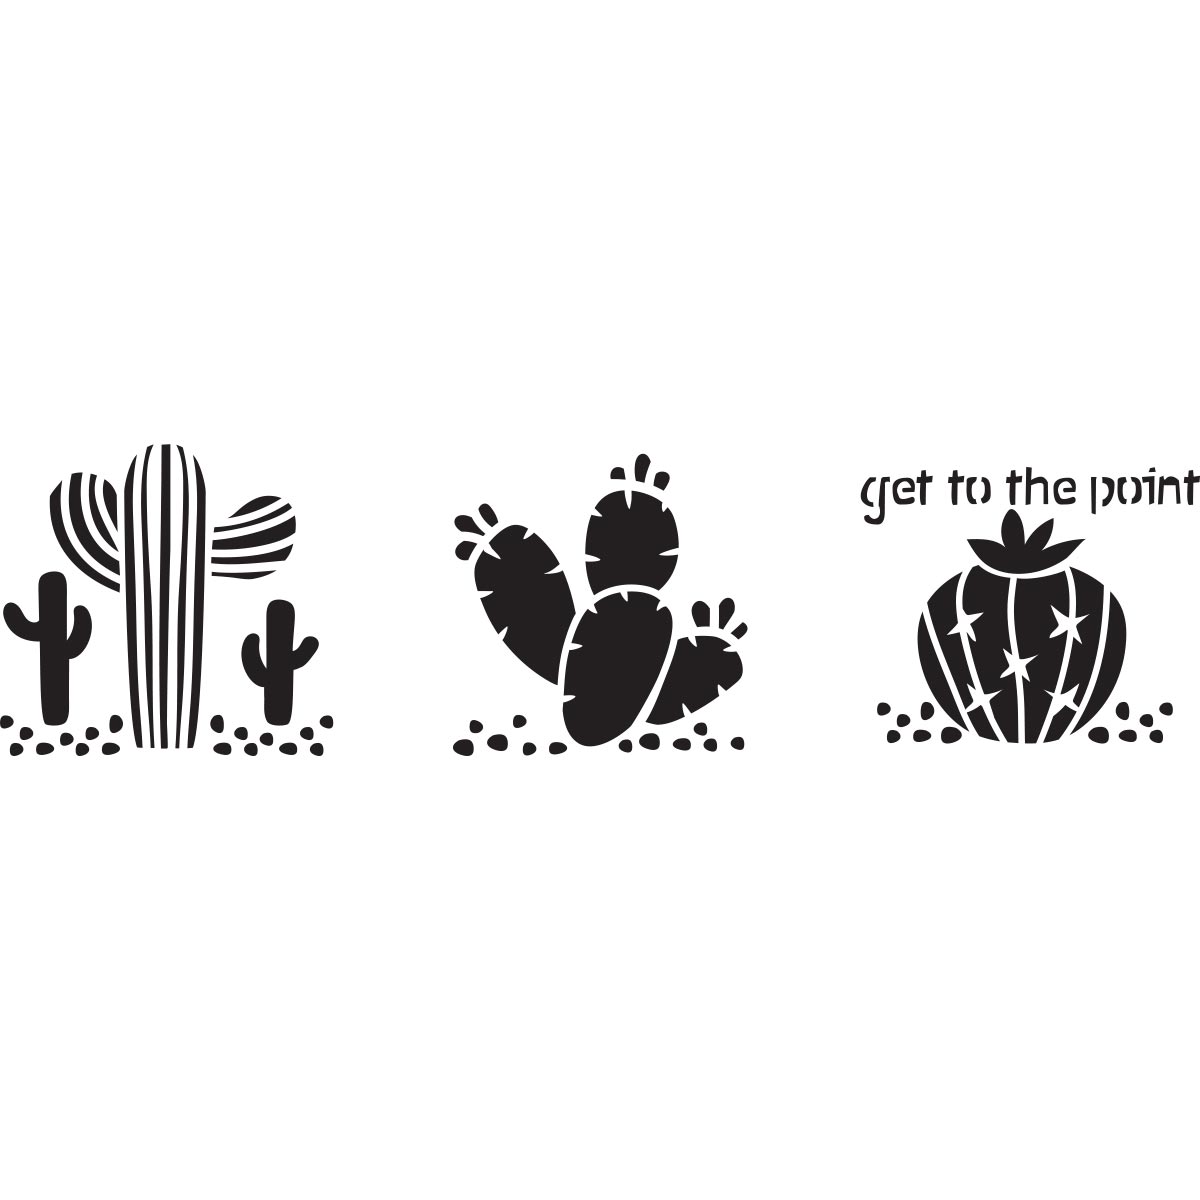 Fabric Creations™ Adhesive Stencils - Mini - Cactus, 3